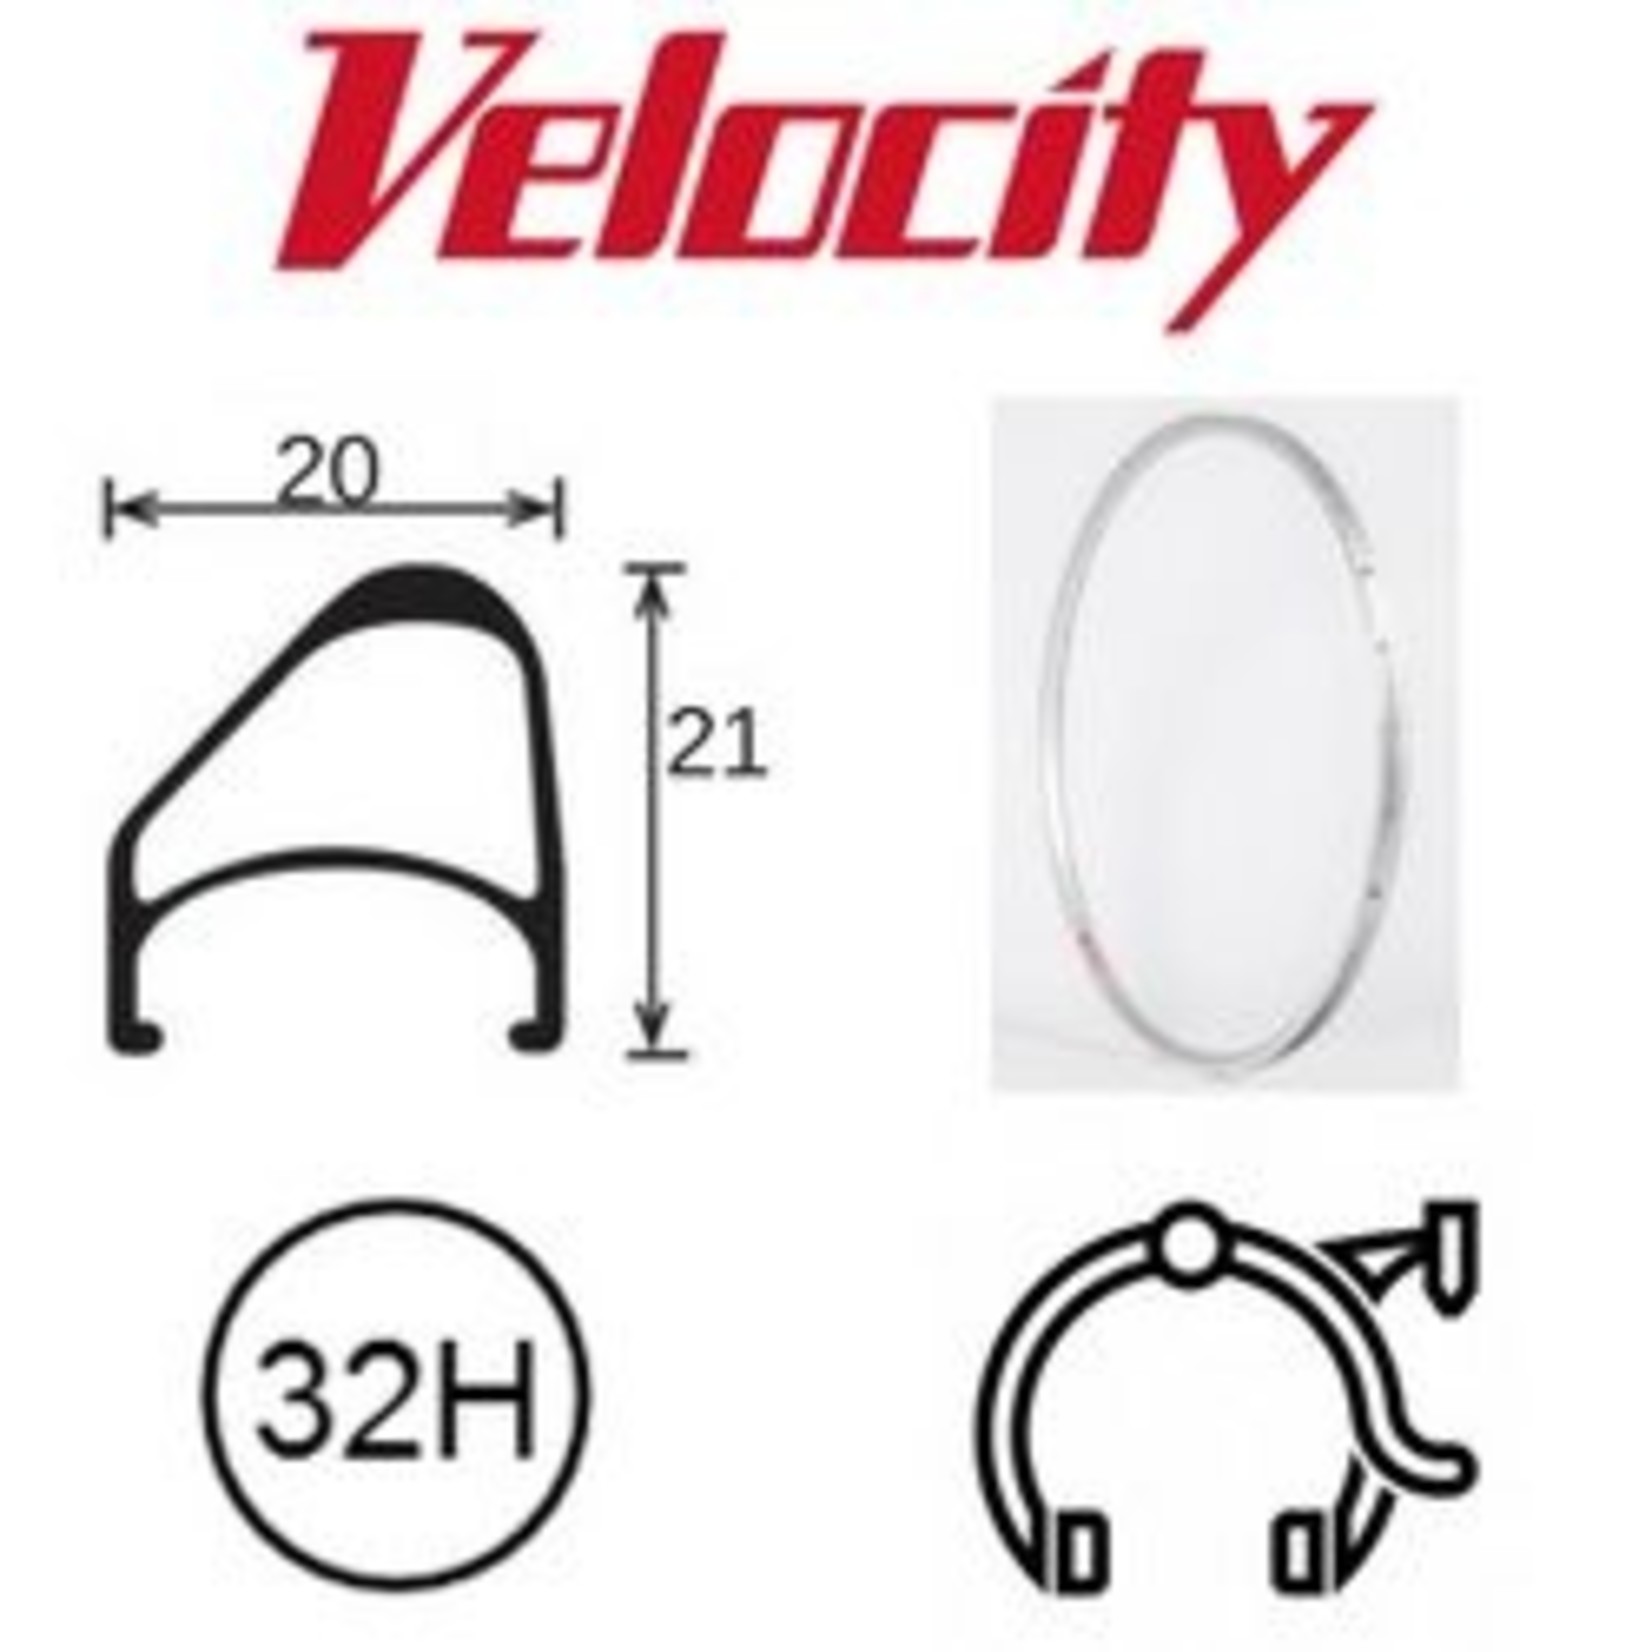 velocity Velocity Rim - Aerohead OC 700C 32H Presta Valve - Rim Brake - D/W - Silver MSW